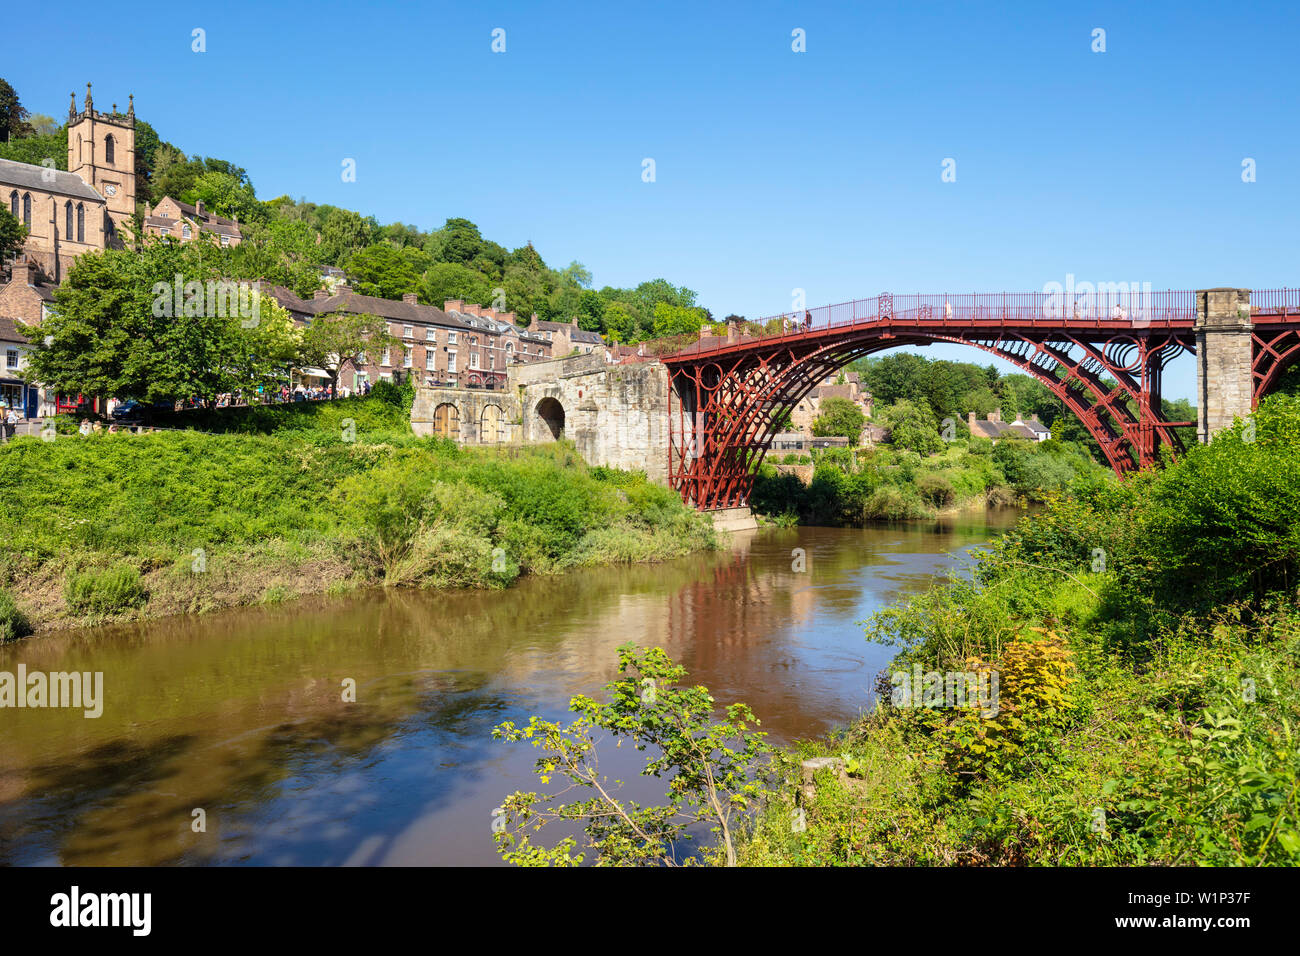 Pont d'Ironbridge Gorge d'ironbridge pont de fer, Shropshire angleterre GO UK Europe Banque D'Images